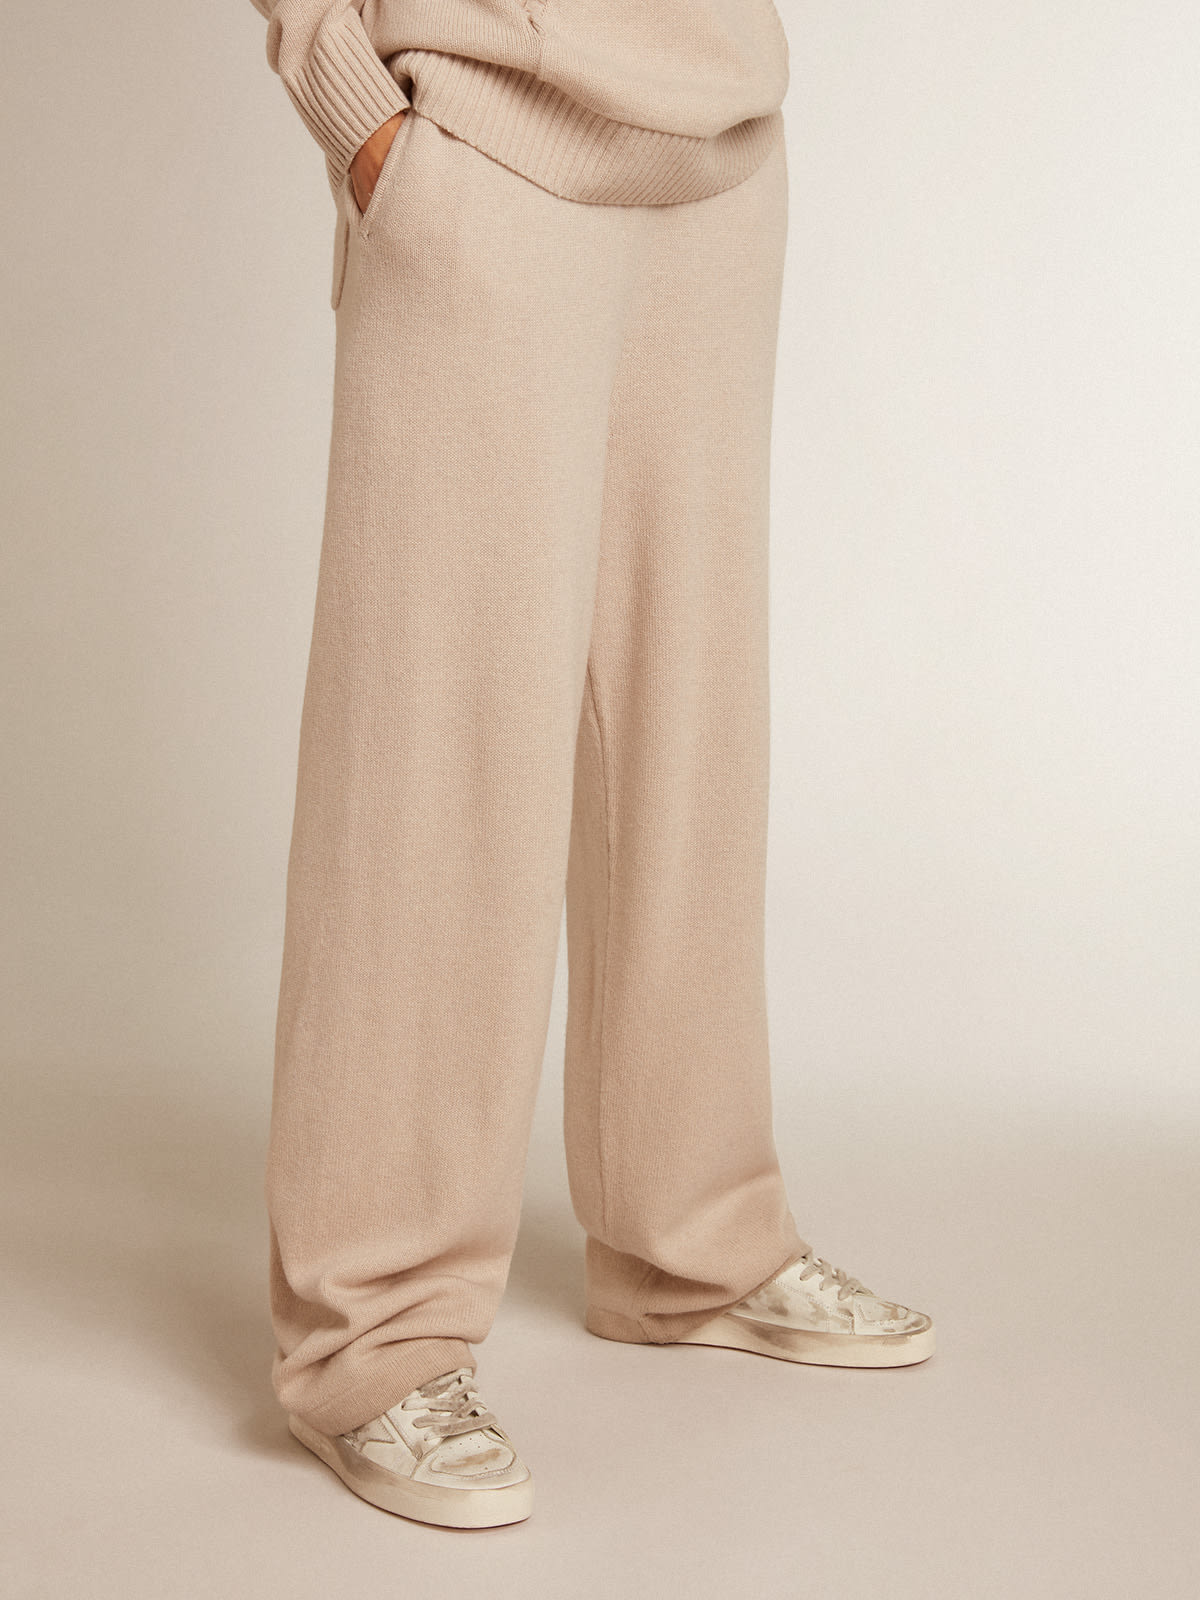 Golden Goose - Pantalón jogger de mujer en mezcla de cachemira color blanco natural in 